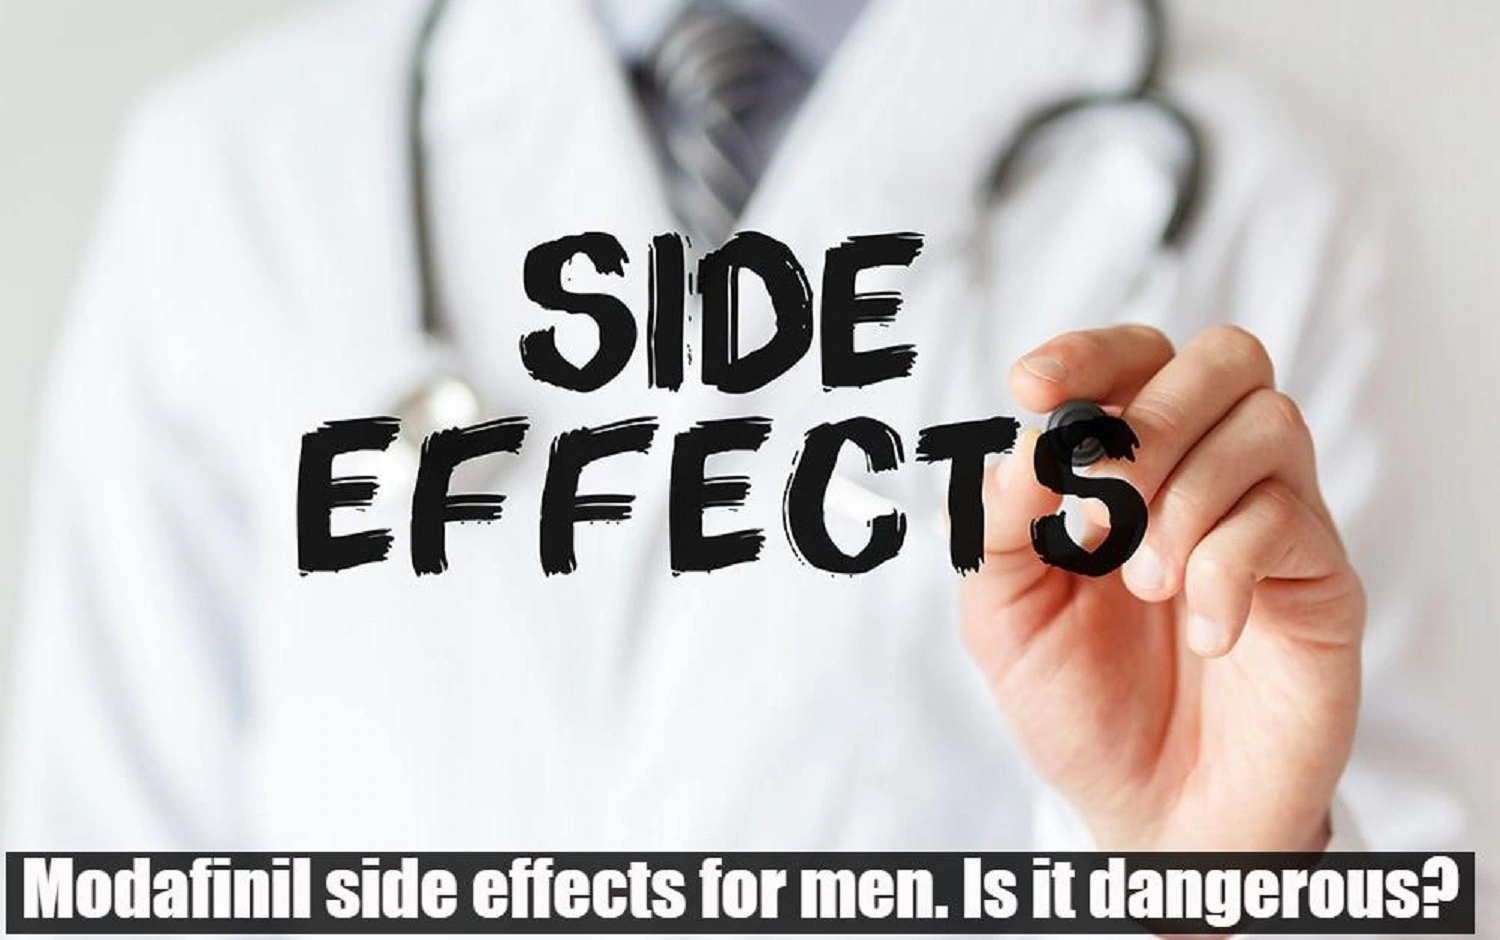 Modafinil side effects for men